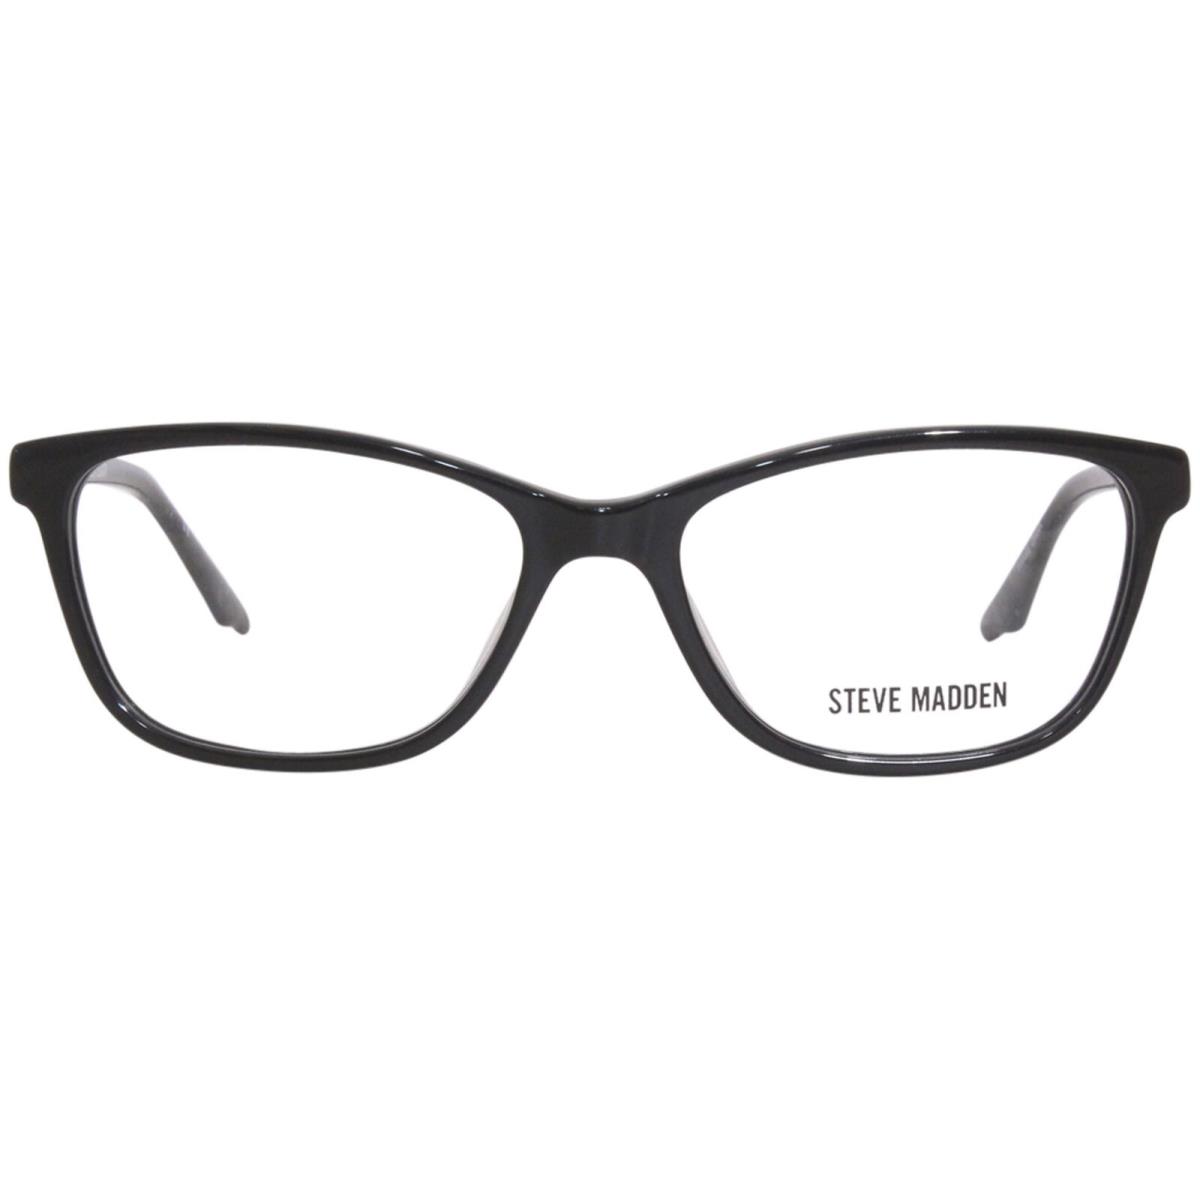 Steve Madden Chulla Eyeglasses Frame Women`s Black Full Rim Cat Eye 52mm - Frame: Black